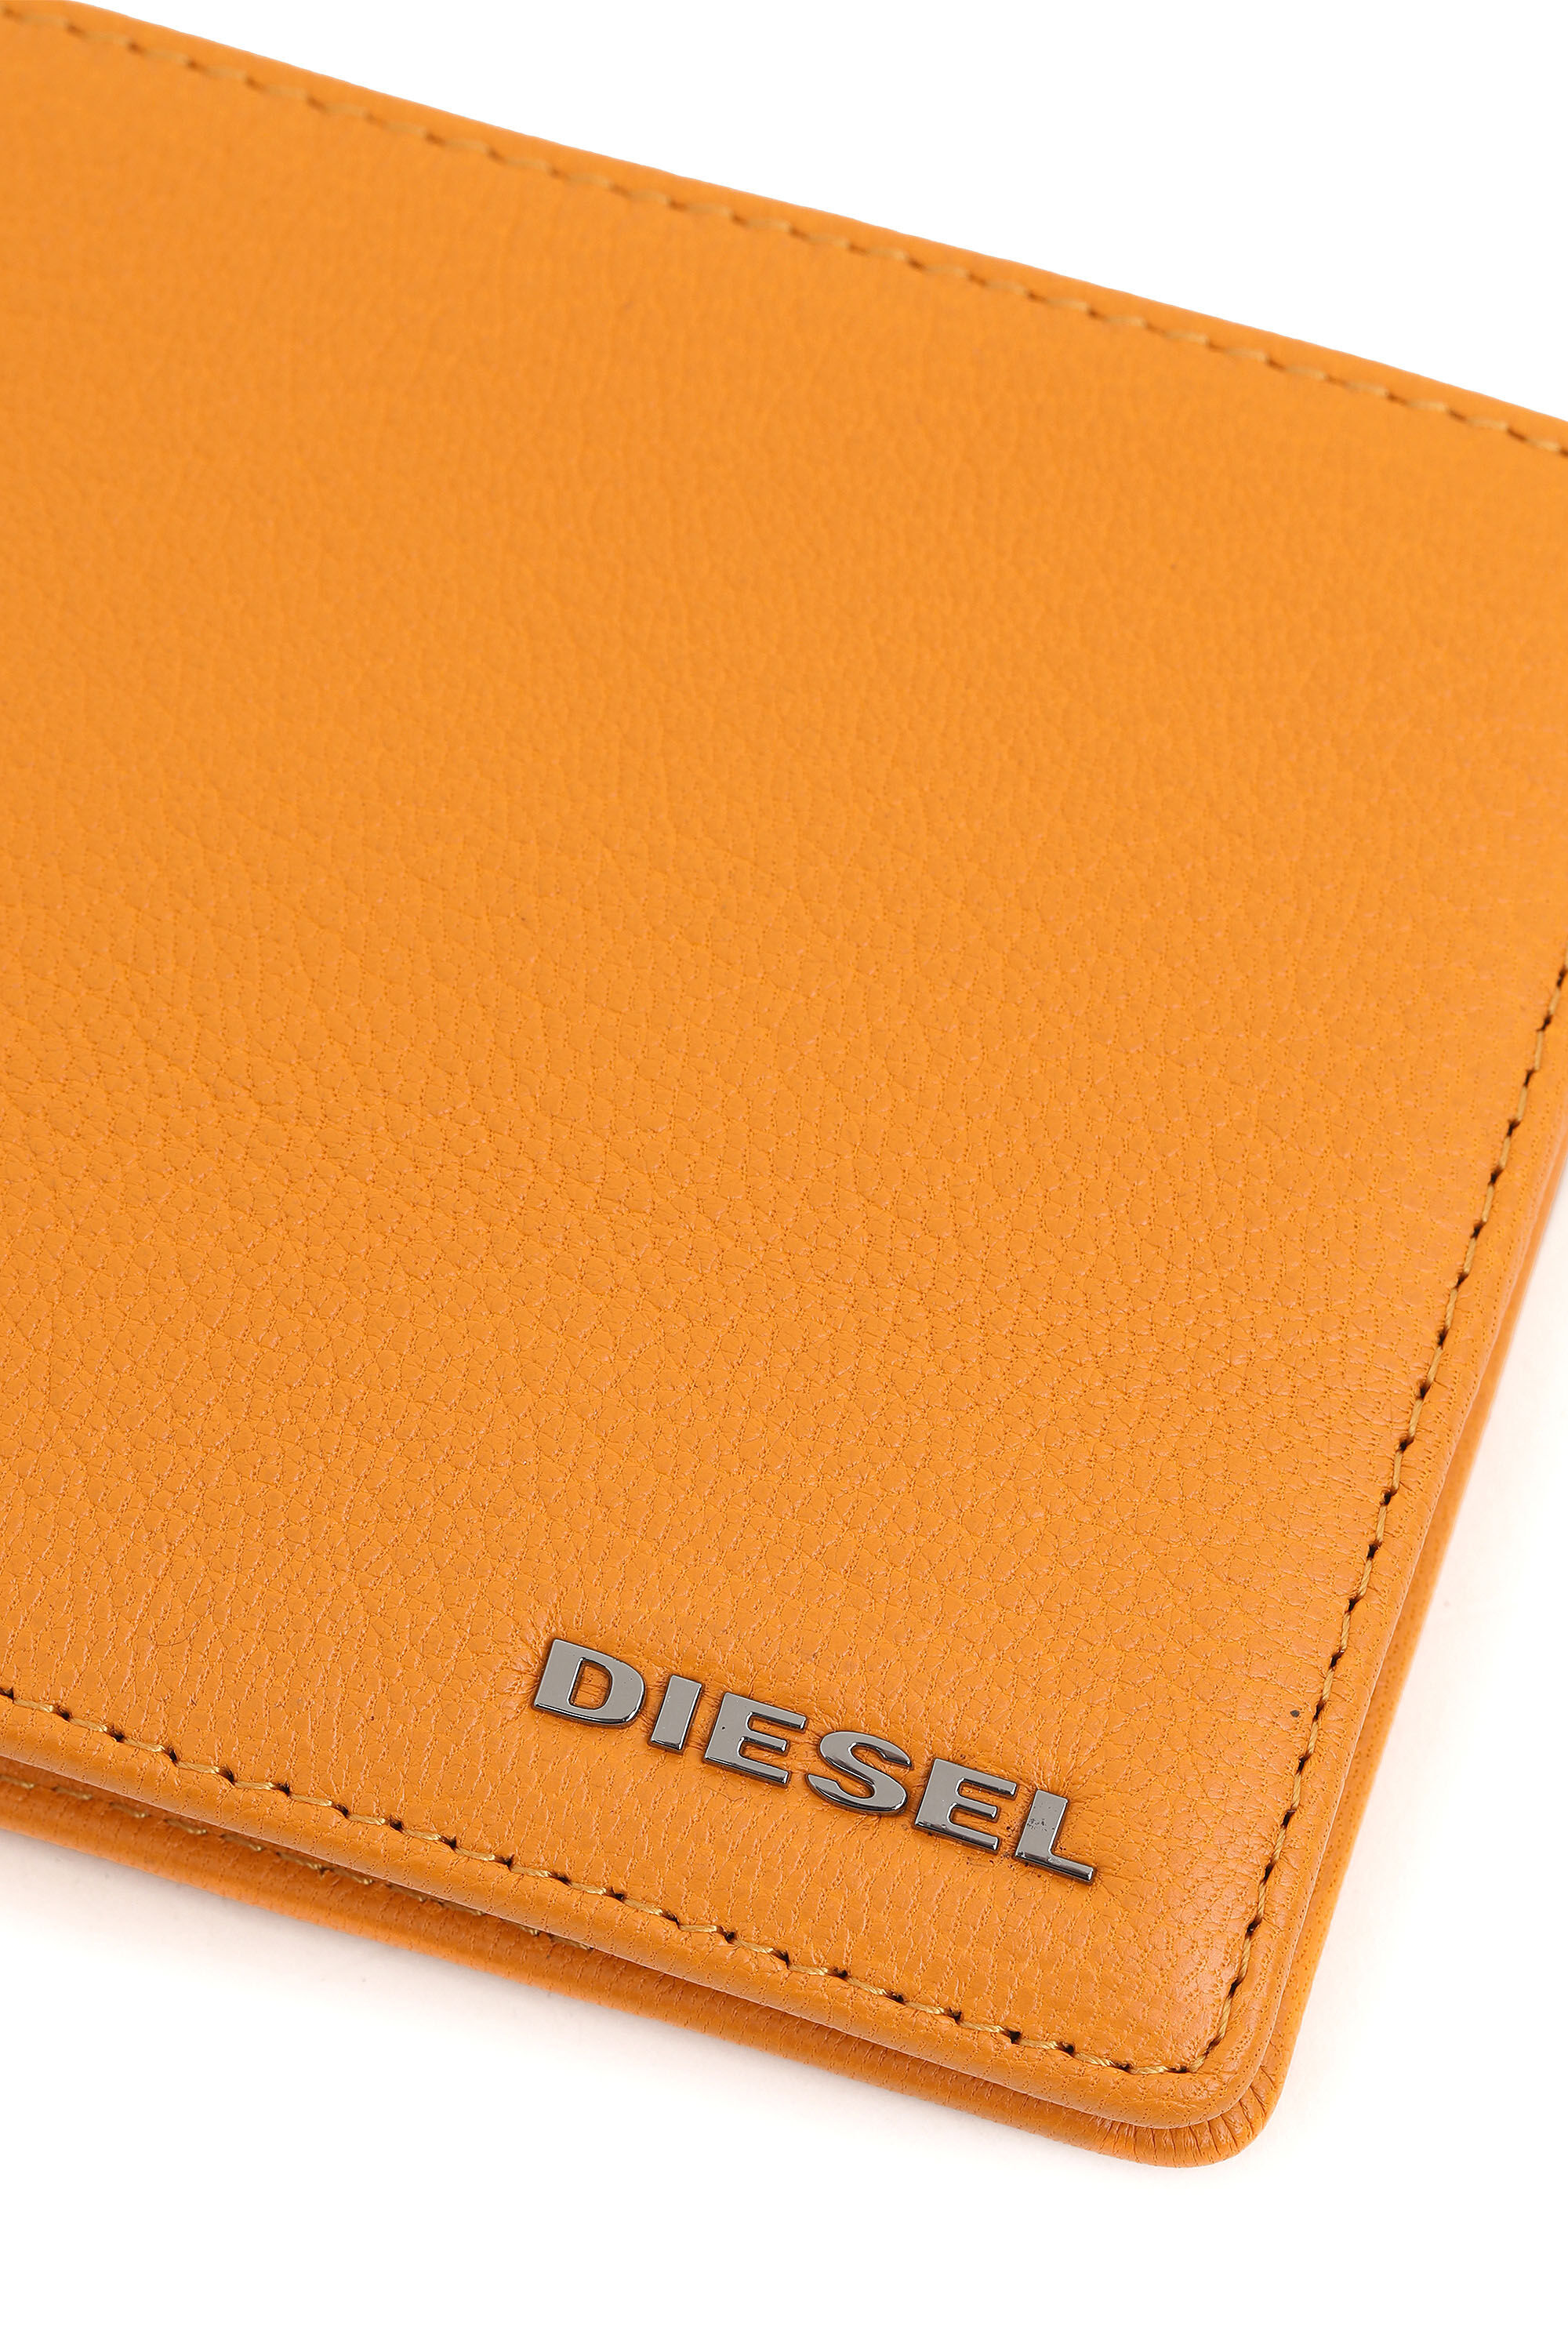 Diesel - HIRESH S, オレンジ - Image 4